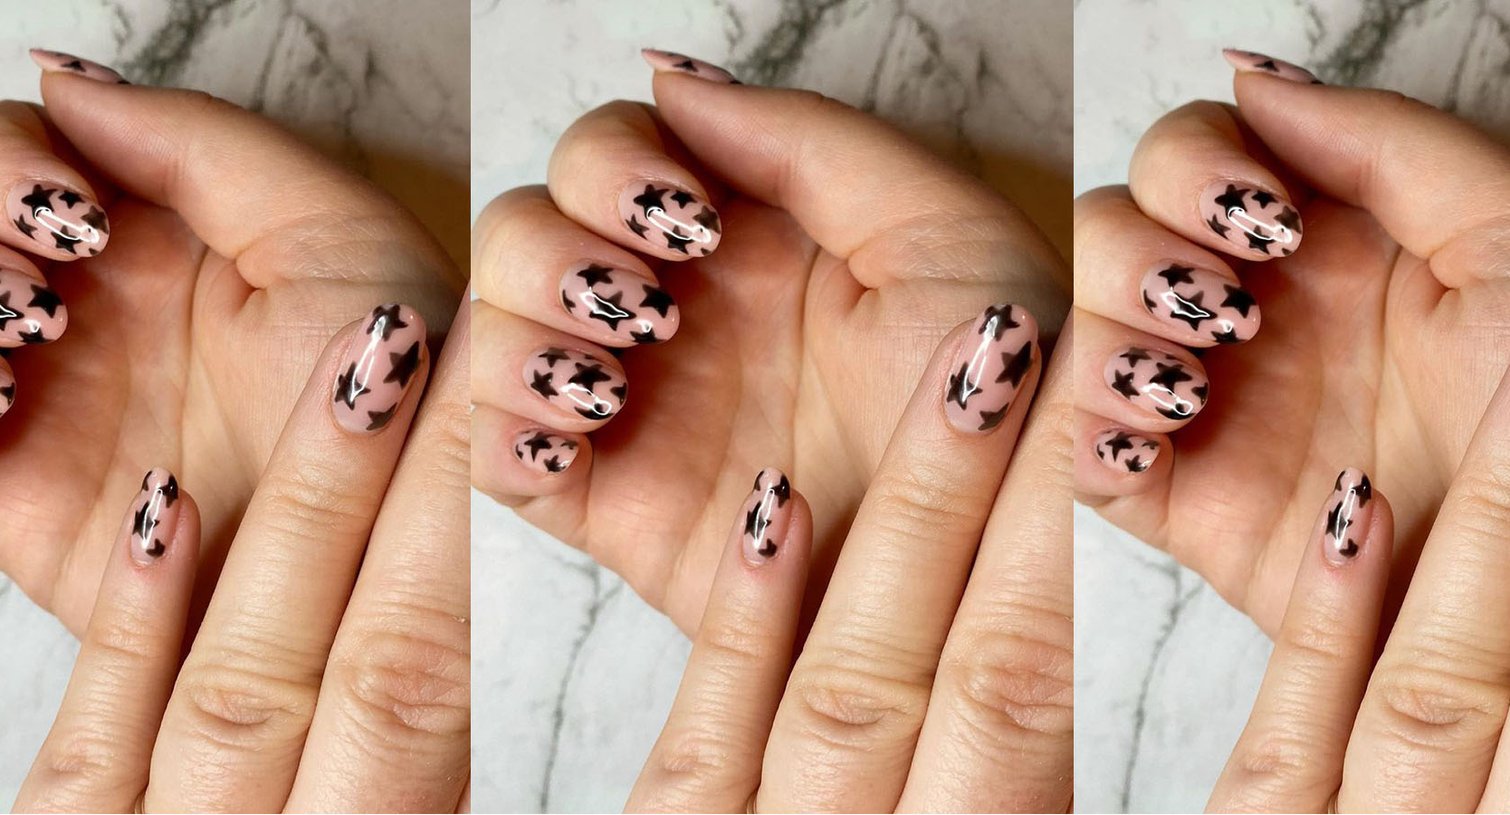 10 Black Nail Designs To Try For Your Next Manicure - L'Oréal Paris